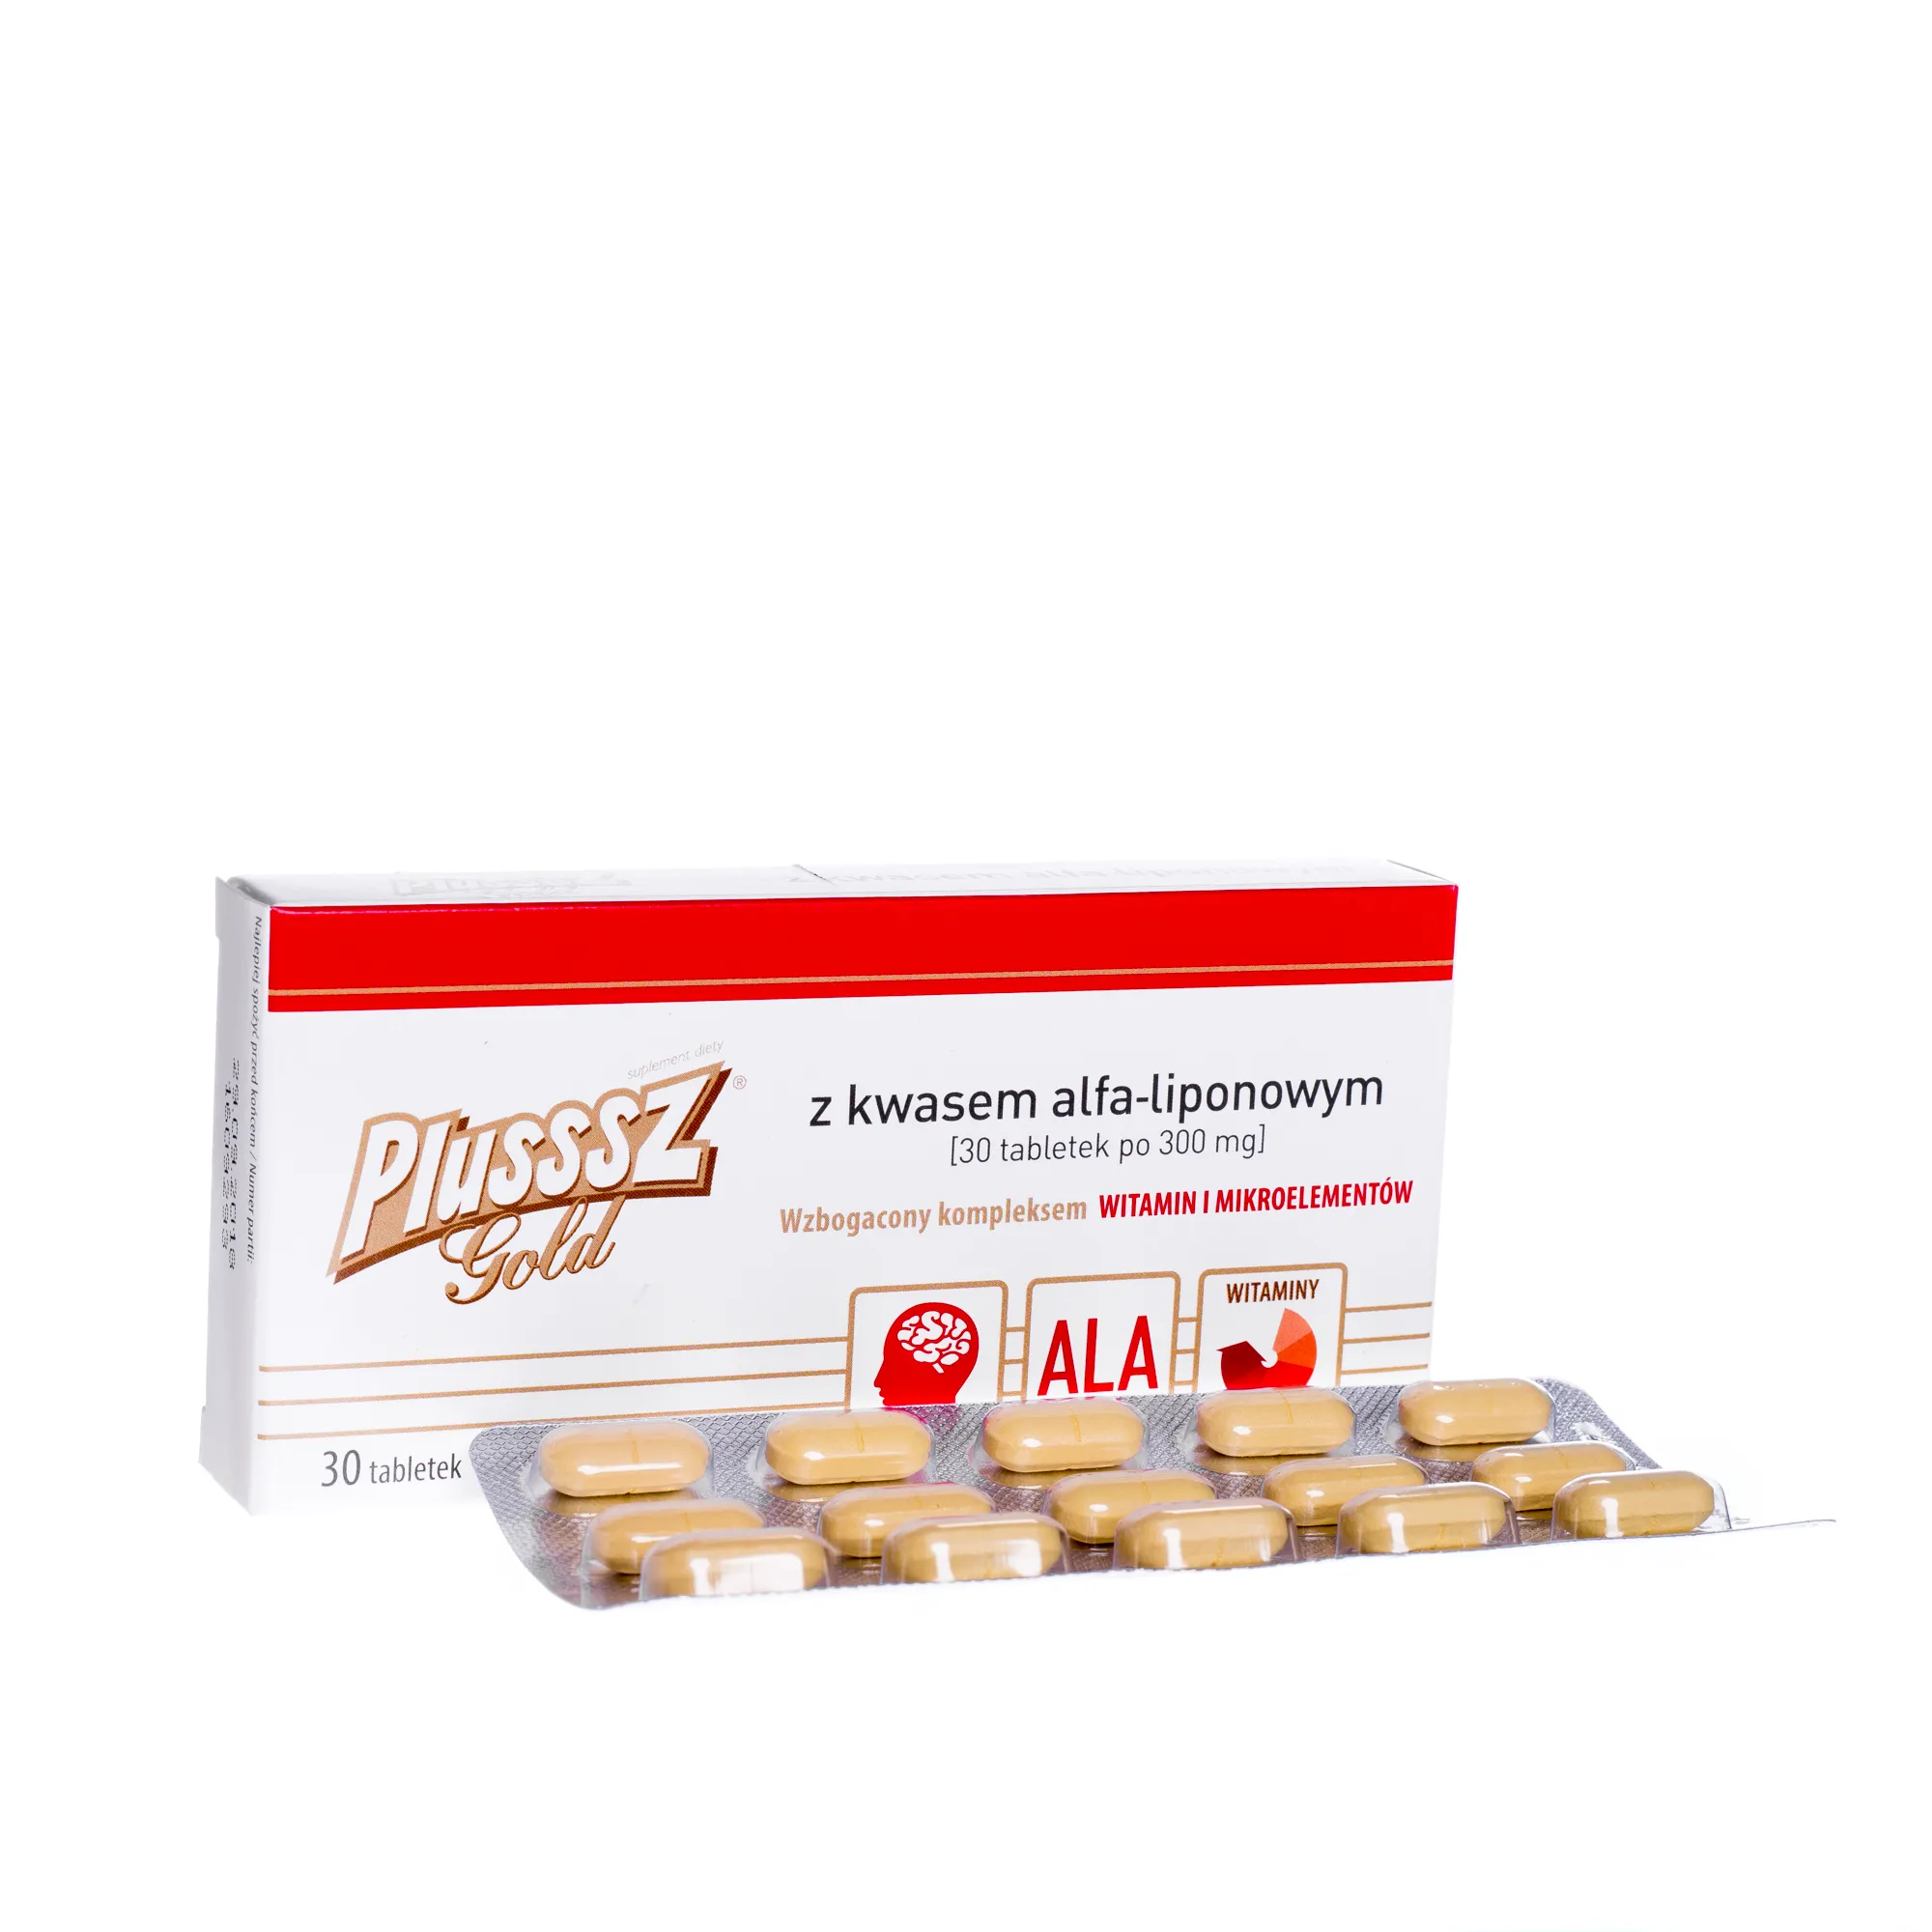 Plusssz Gold z kwasem alfa-liponowym 300 mg, 30 tabletek 